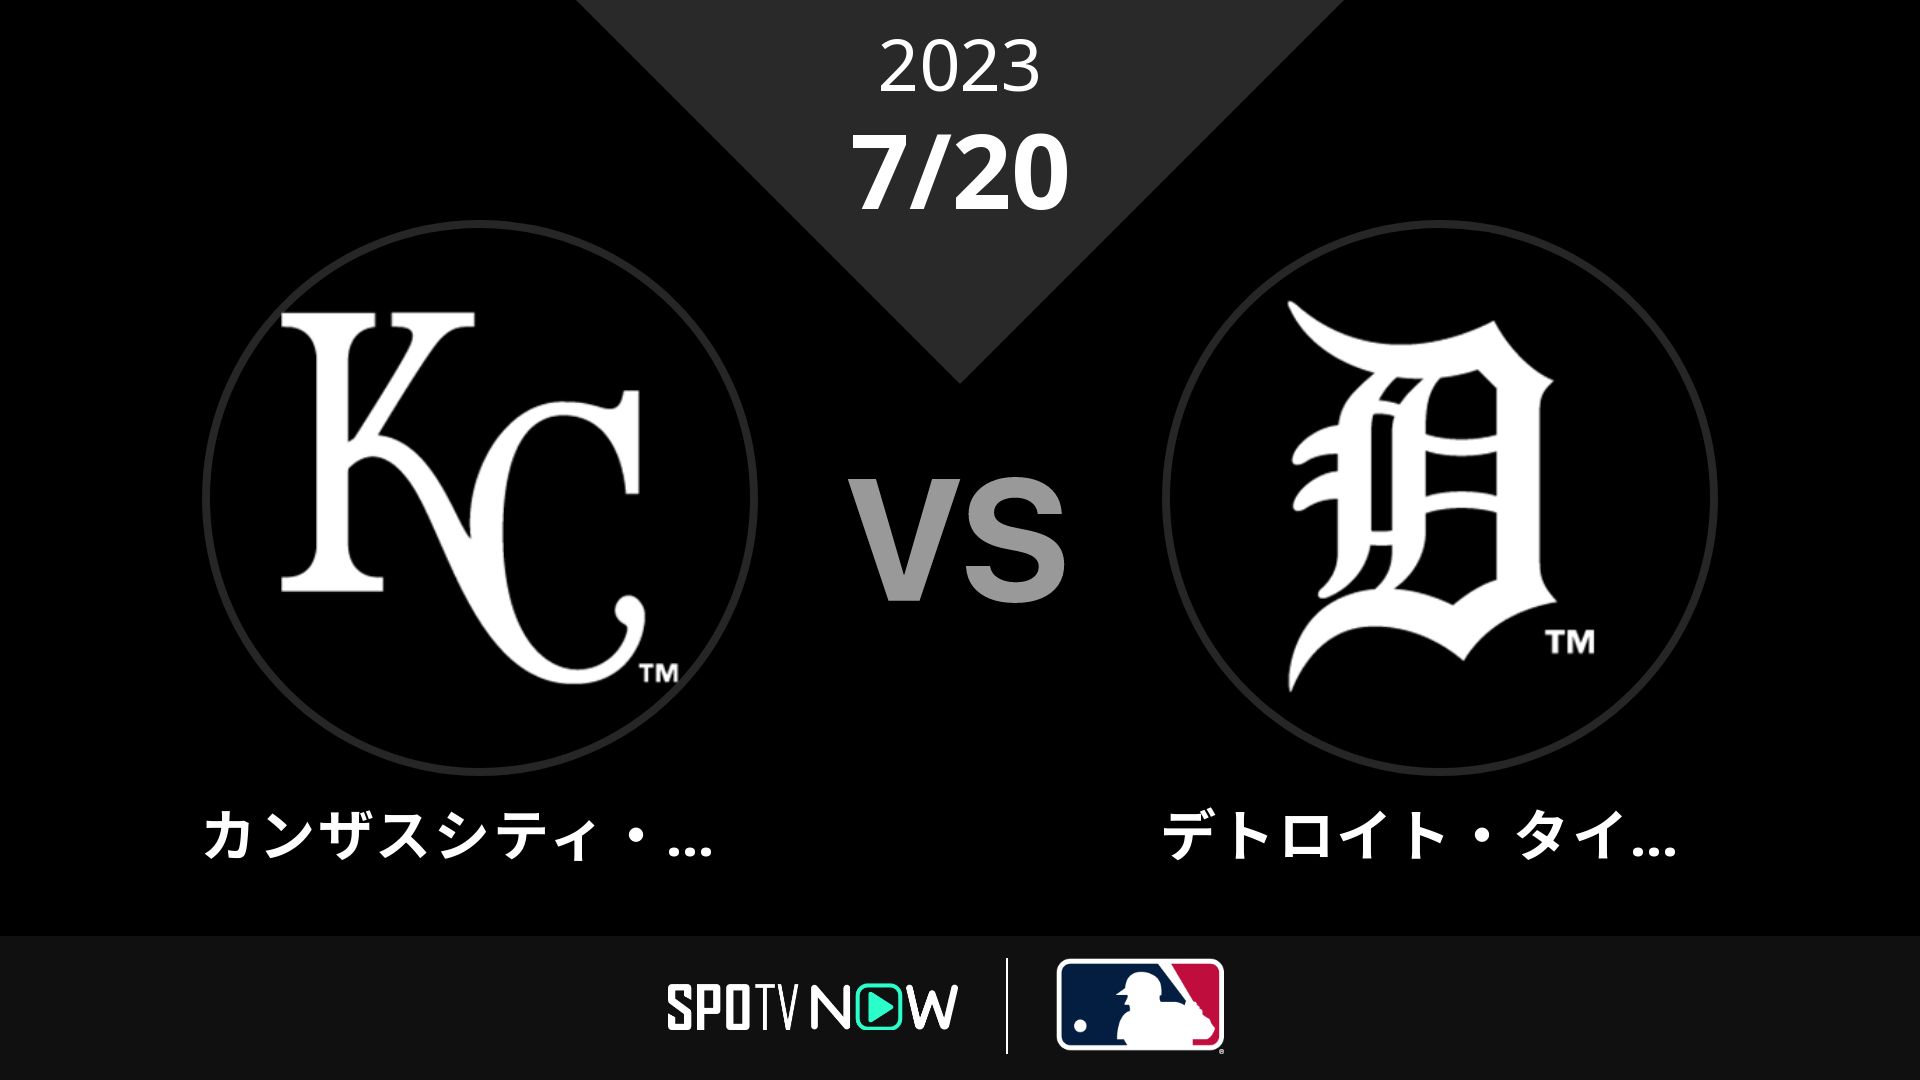 2023/7/20 ロイヤルズ vs タイガース [MLB]